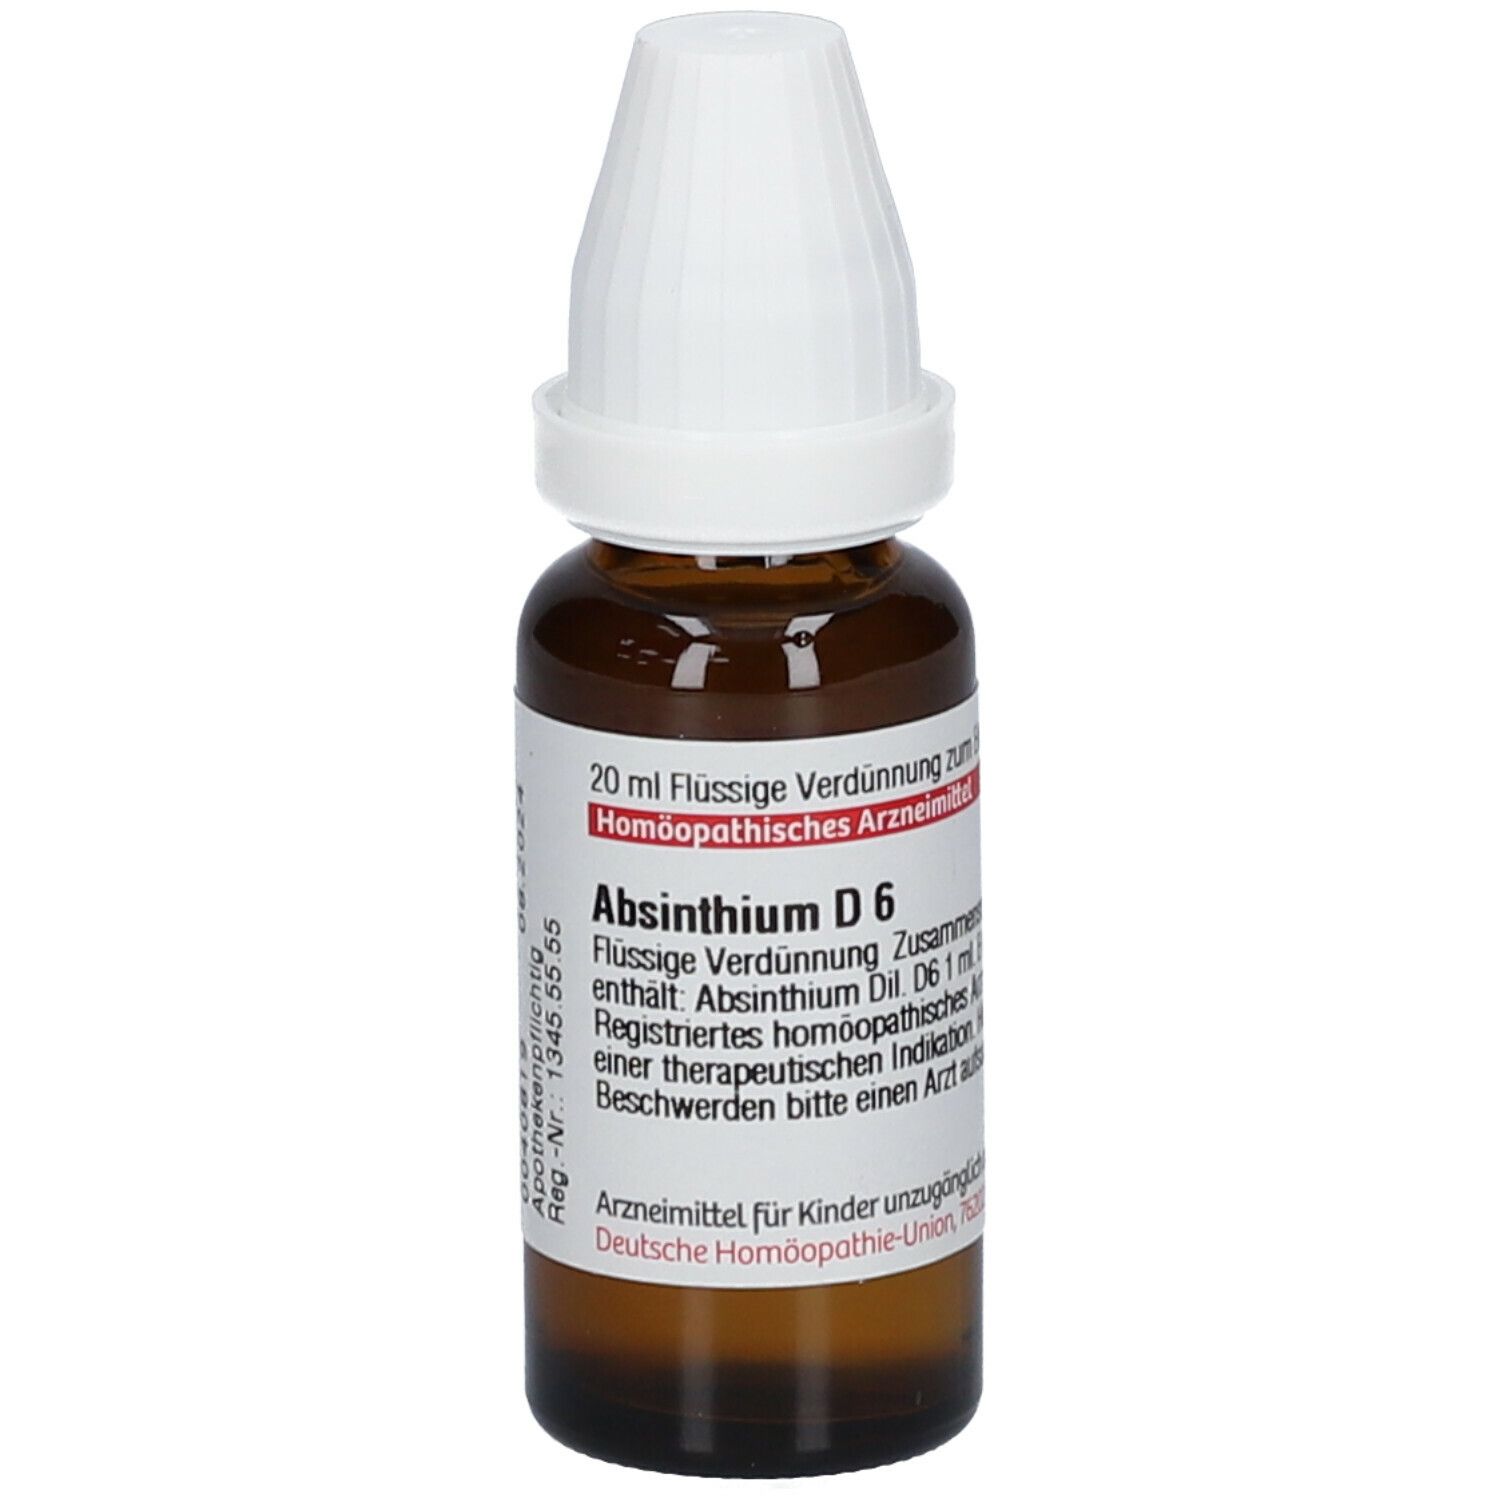 DHU Absinthium D6